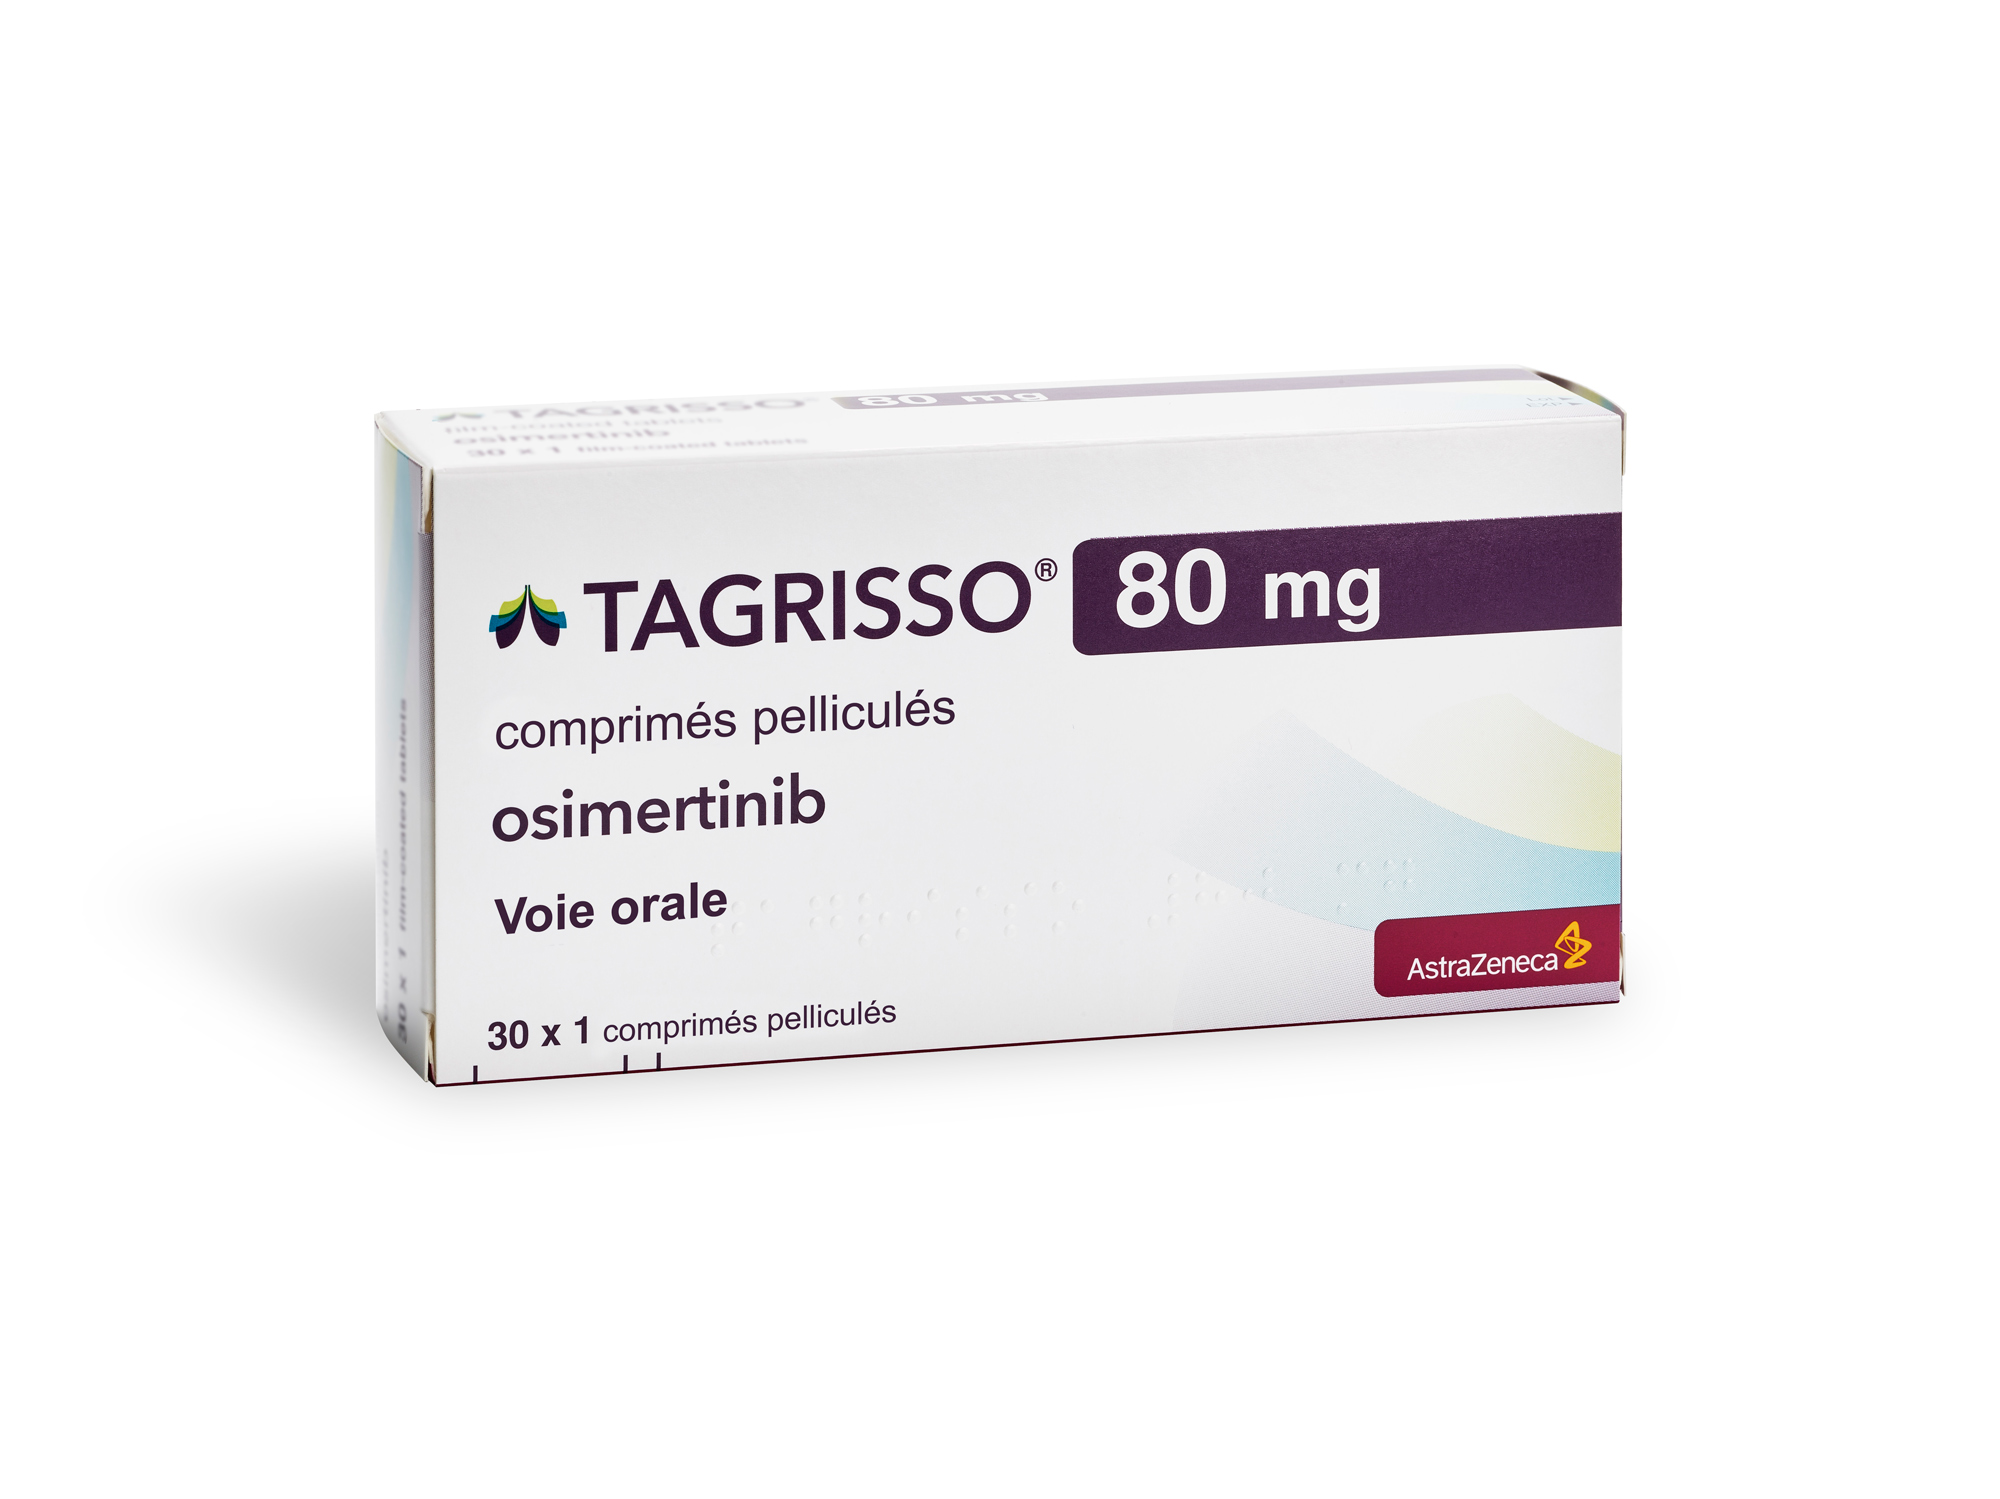 泰瑞沙奥西替尼Tagrisso（osimertinib）用于术后辅助治疗显著延长了无病生存期